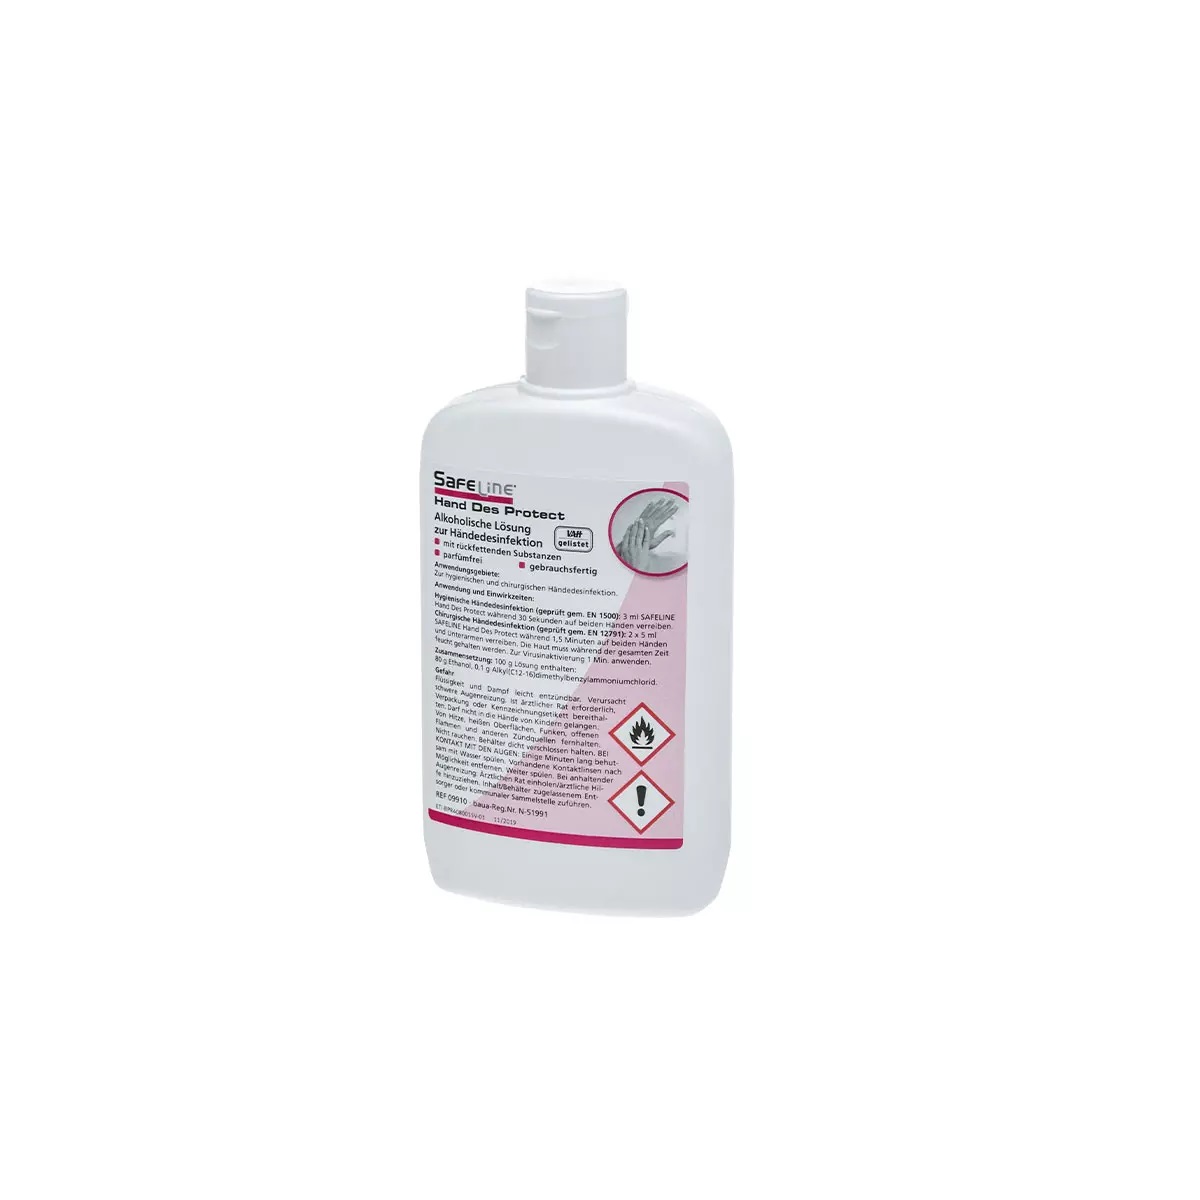 AMPRI-Händedesinfektion, Safeline, Hand Des Protect, VE = 20 Flaschen, 150 ml